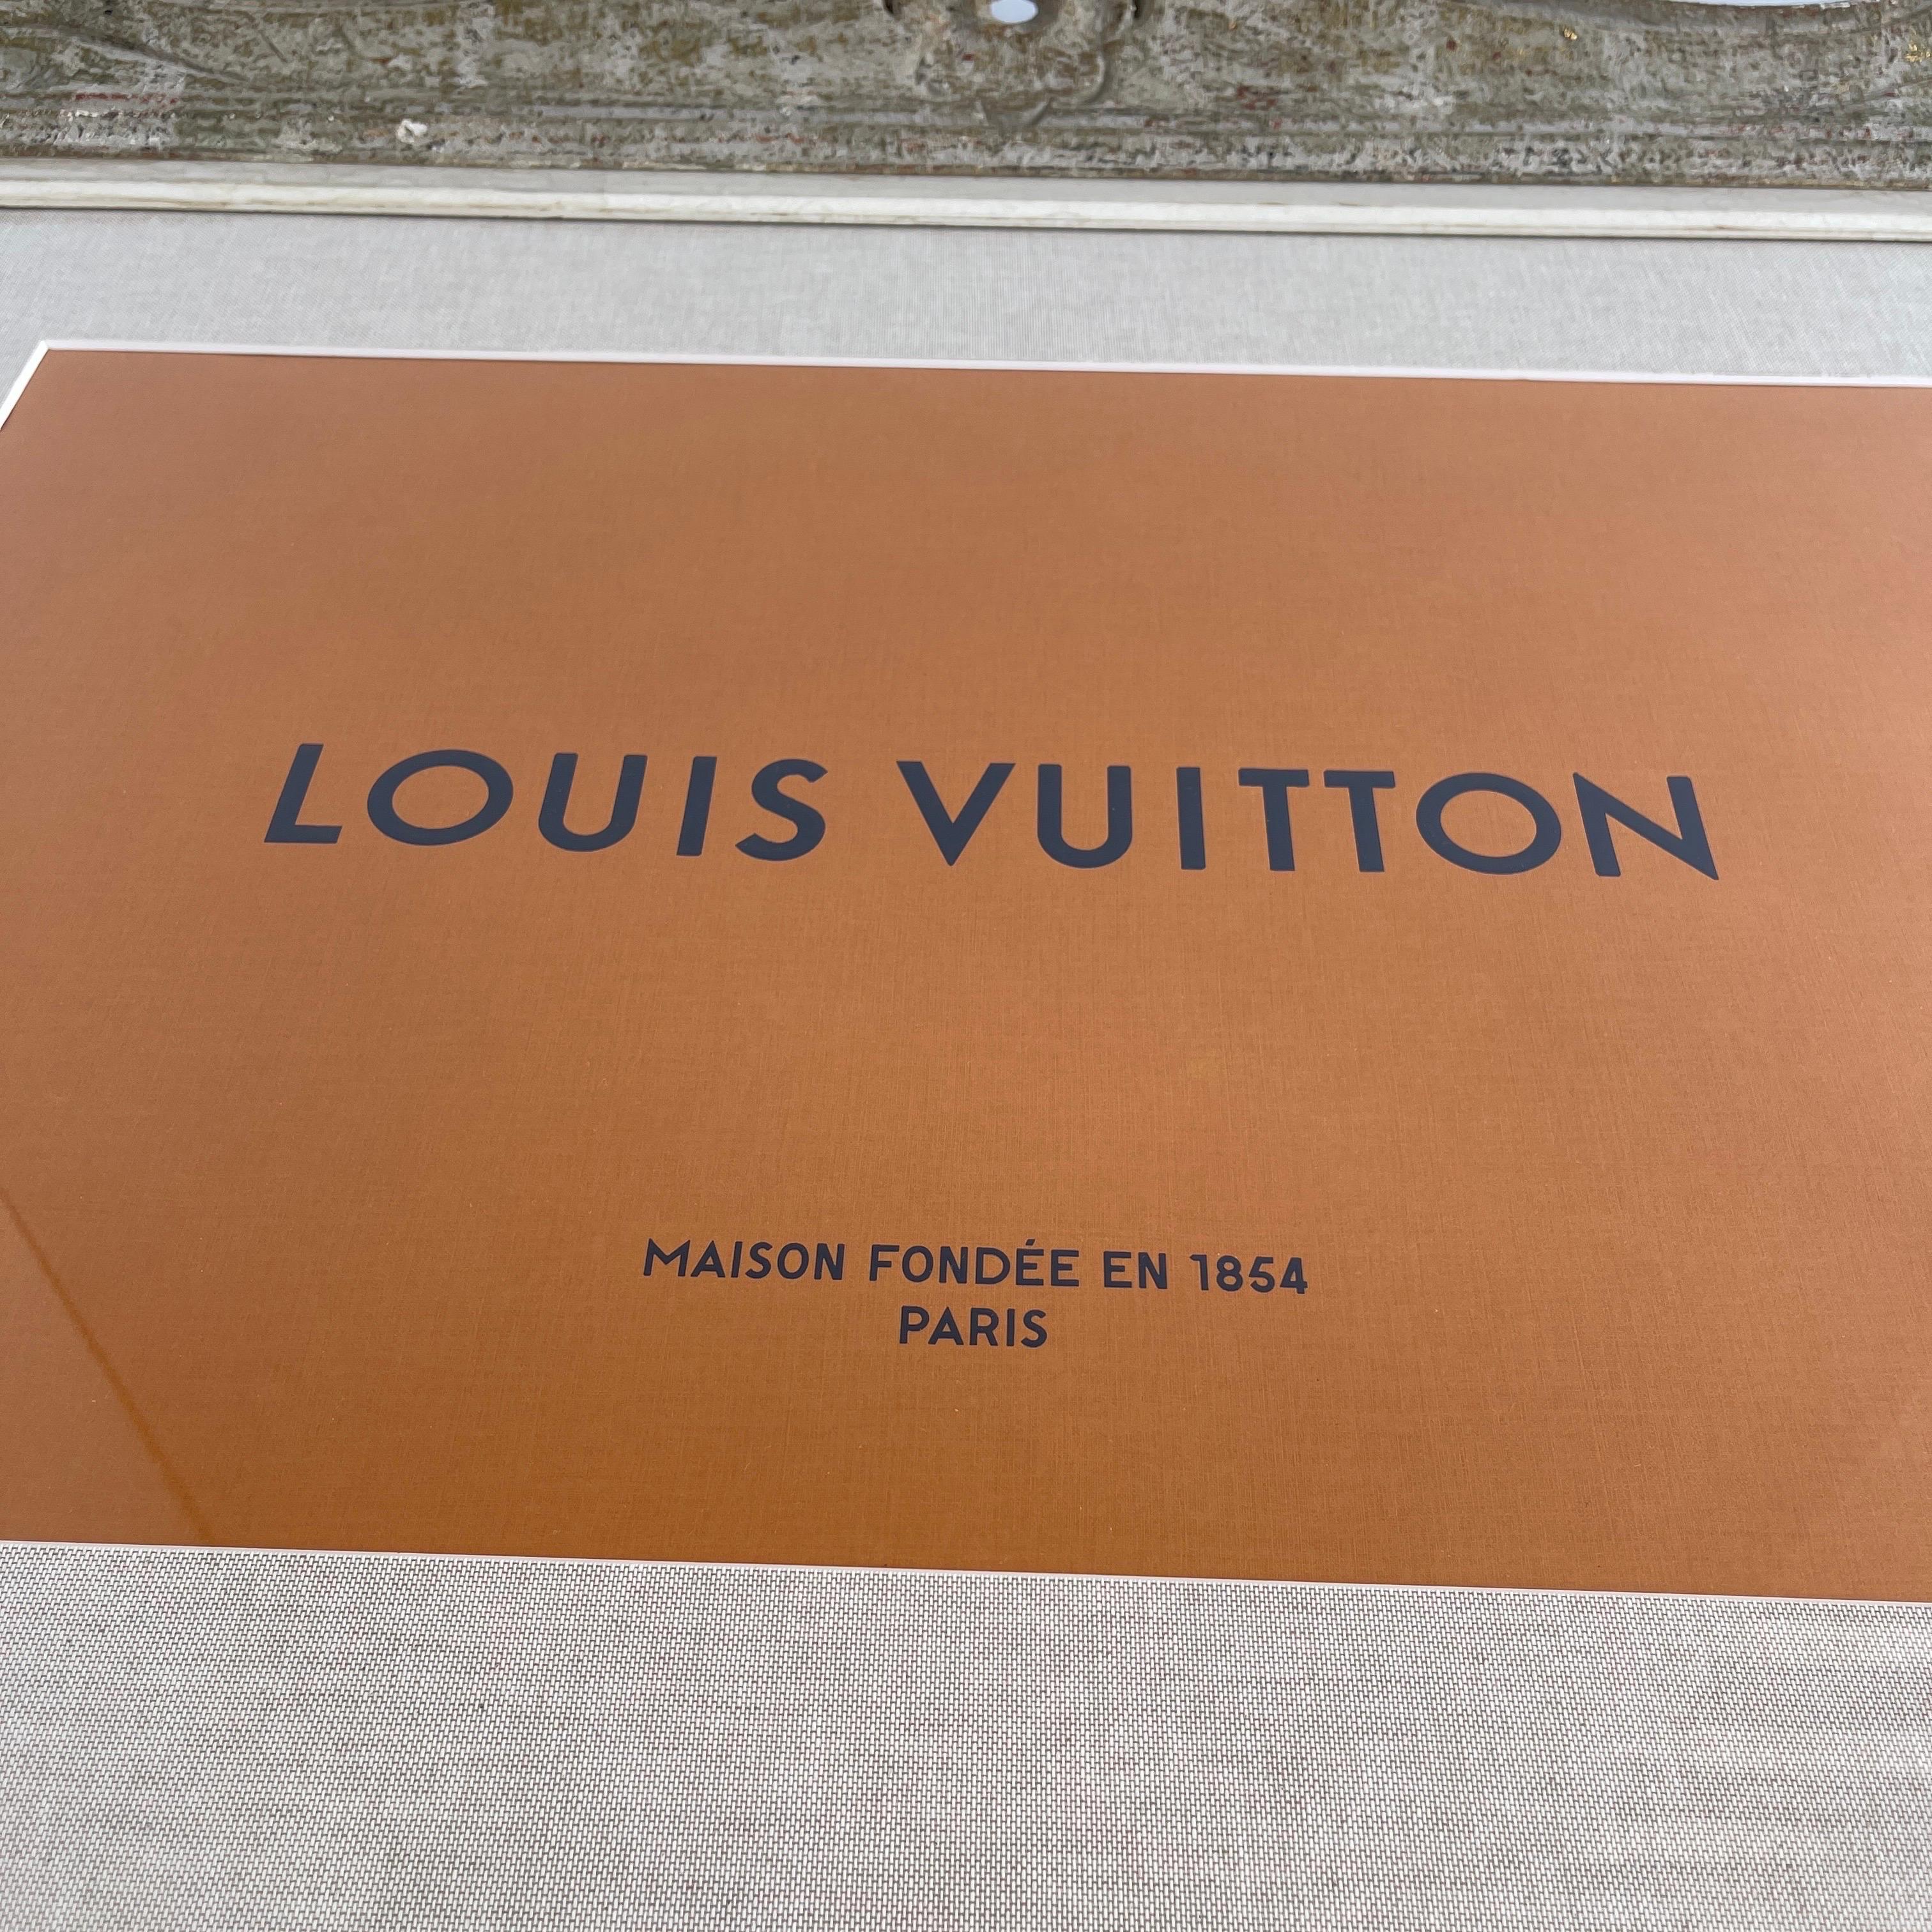 Grand cadre peint gris de style gustavien avec œuvre d'art imprimée orange Louis Vuitton

Œuvre d'art imprimée unique de Louis Vuitton encadrée avec un passe-partout en lin de style classique et un cadre vintage avec une patine étonnante des années